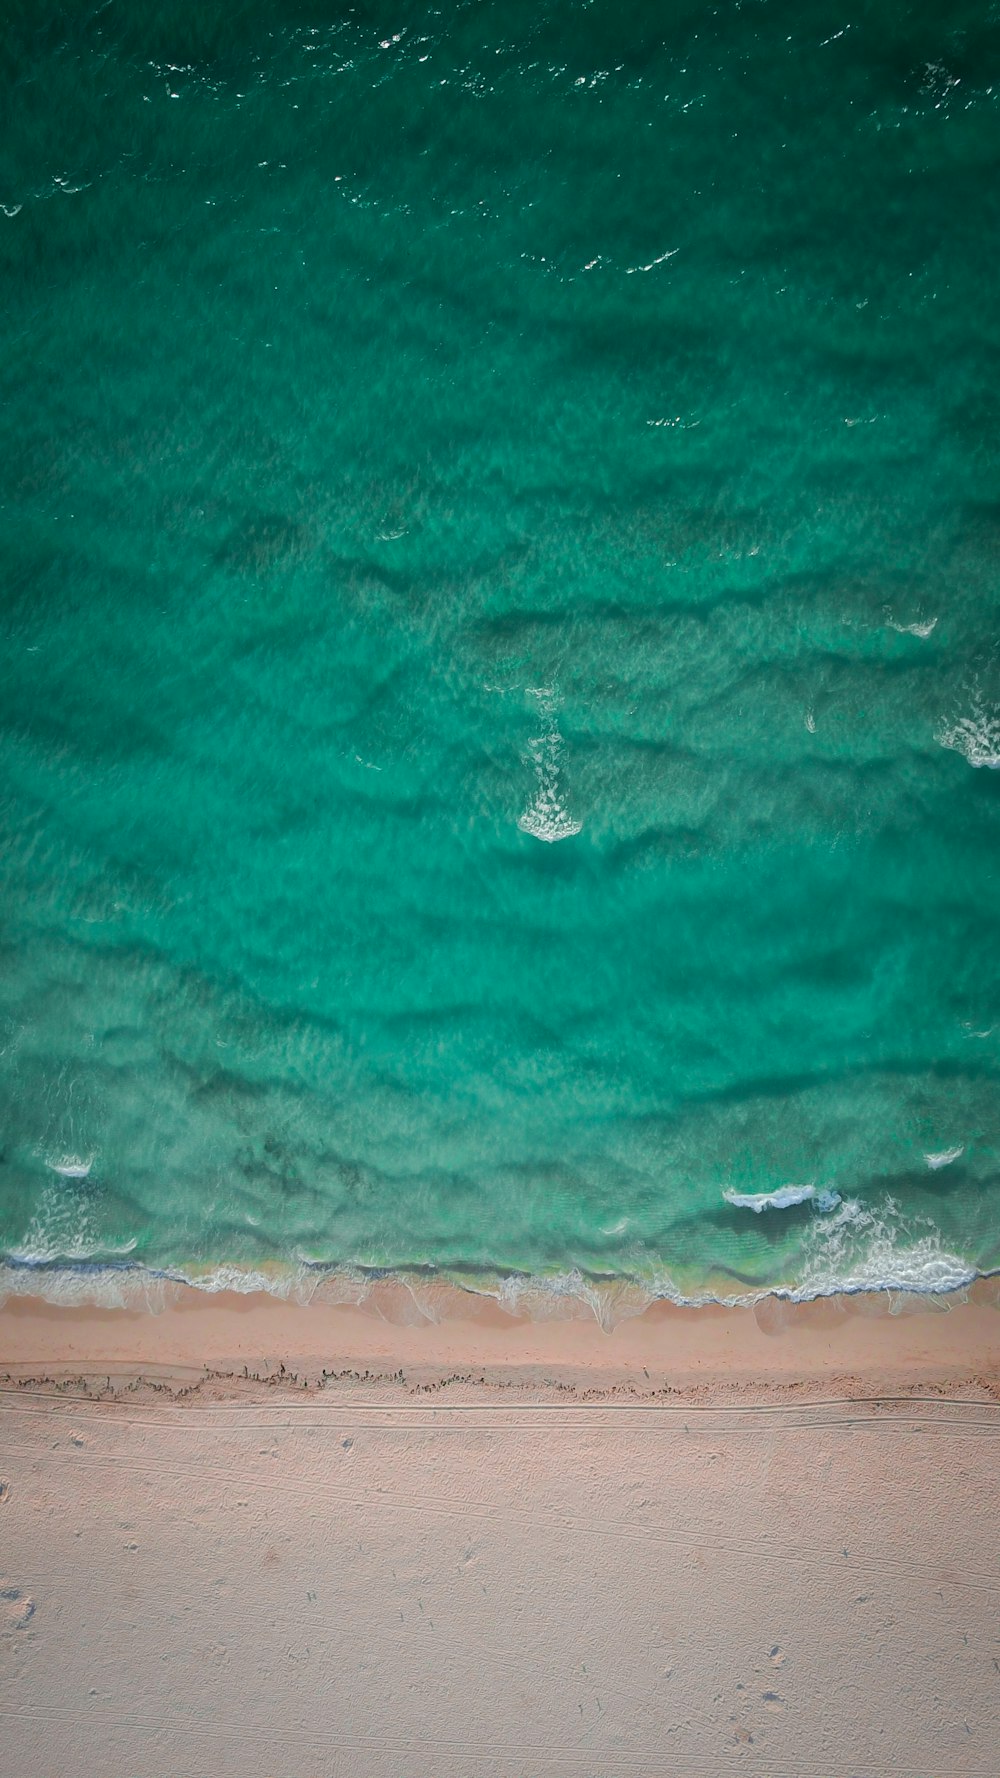 Luftbild des grünen Gewässers bei Tag